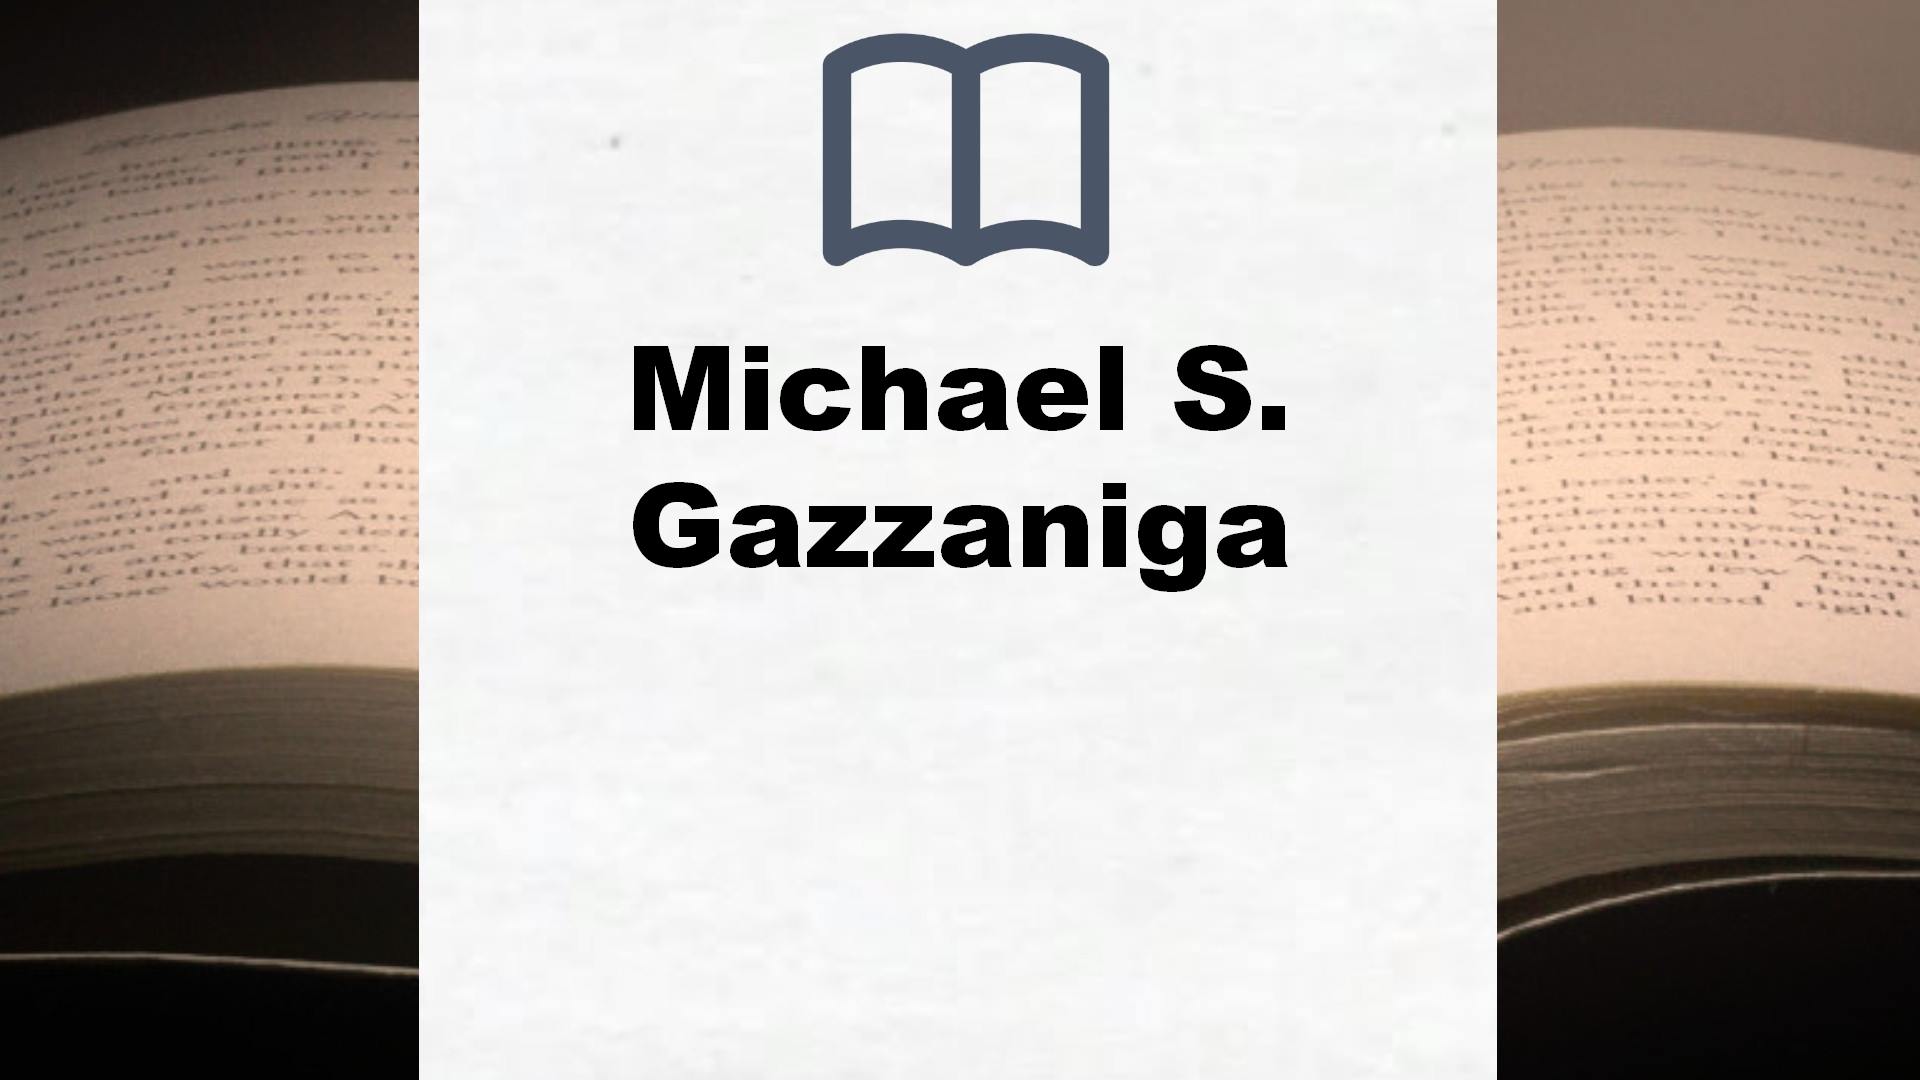 Libros Michael S. Gazzaniga